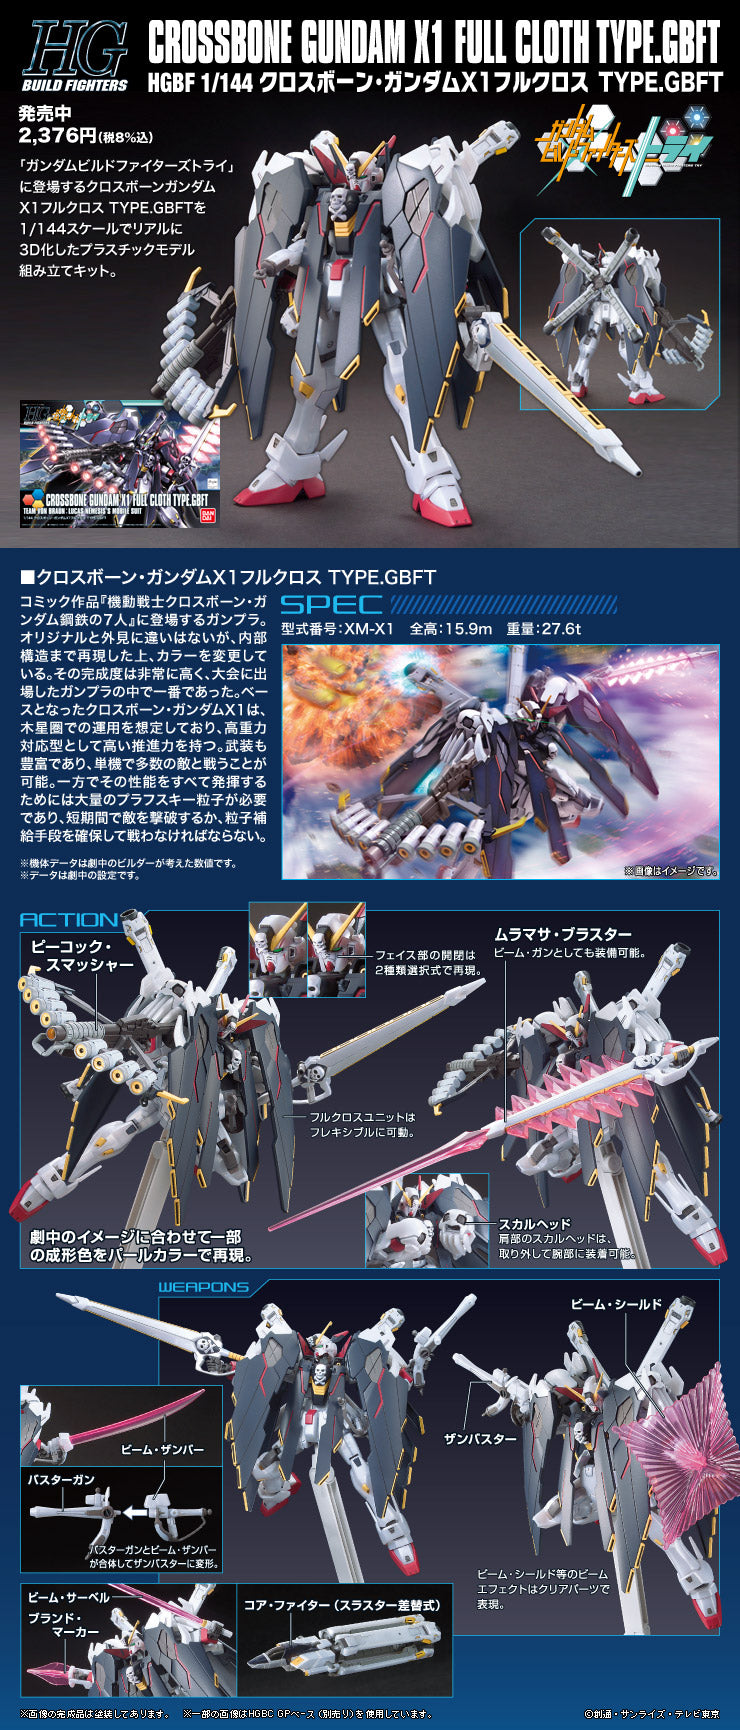 BAS2301522 Bandai HGBF 1/144 XM-X1 Crossbone Gundam X-1 Full Cloth Type.GBFT Model Kit 4573102577207